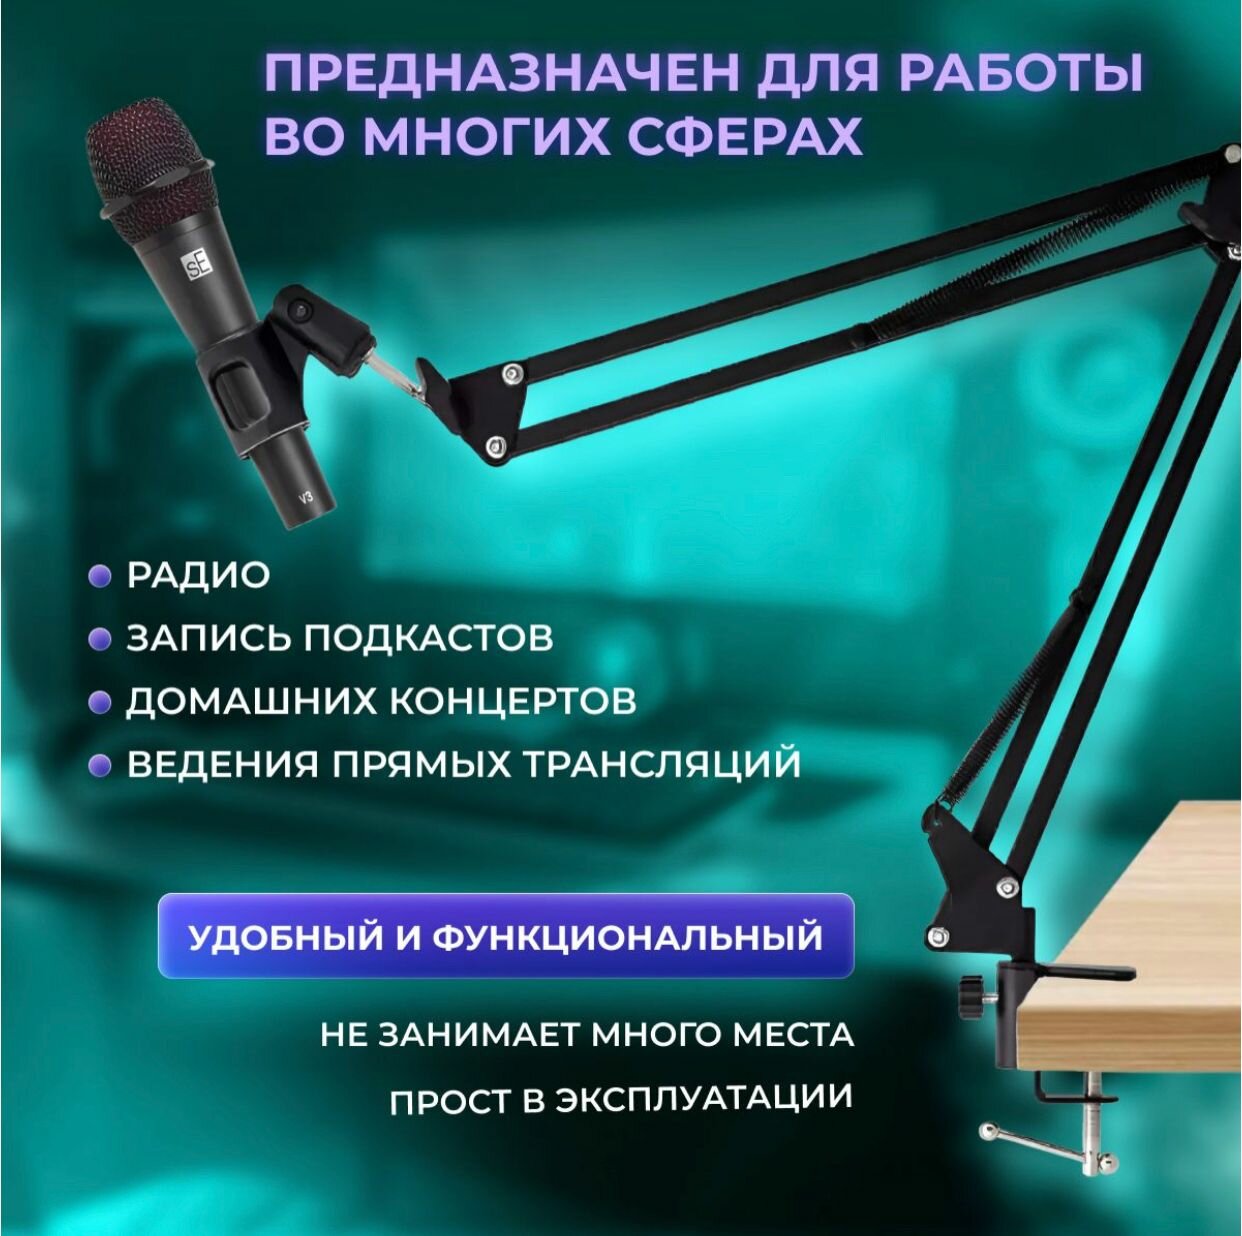 Настольный кронштейн-стойка для микрофона NB-35 / Стойка для микрофона пантограф с настольным креплением / Микрофонная стойка